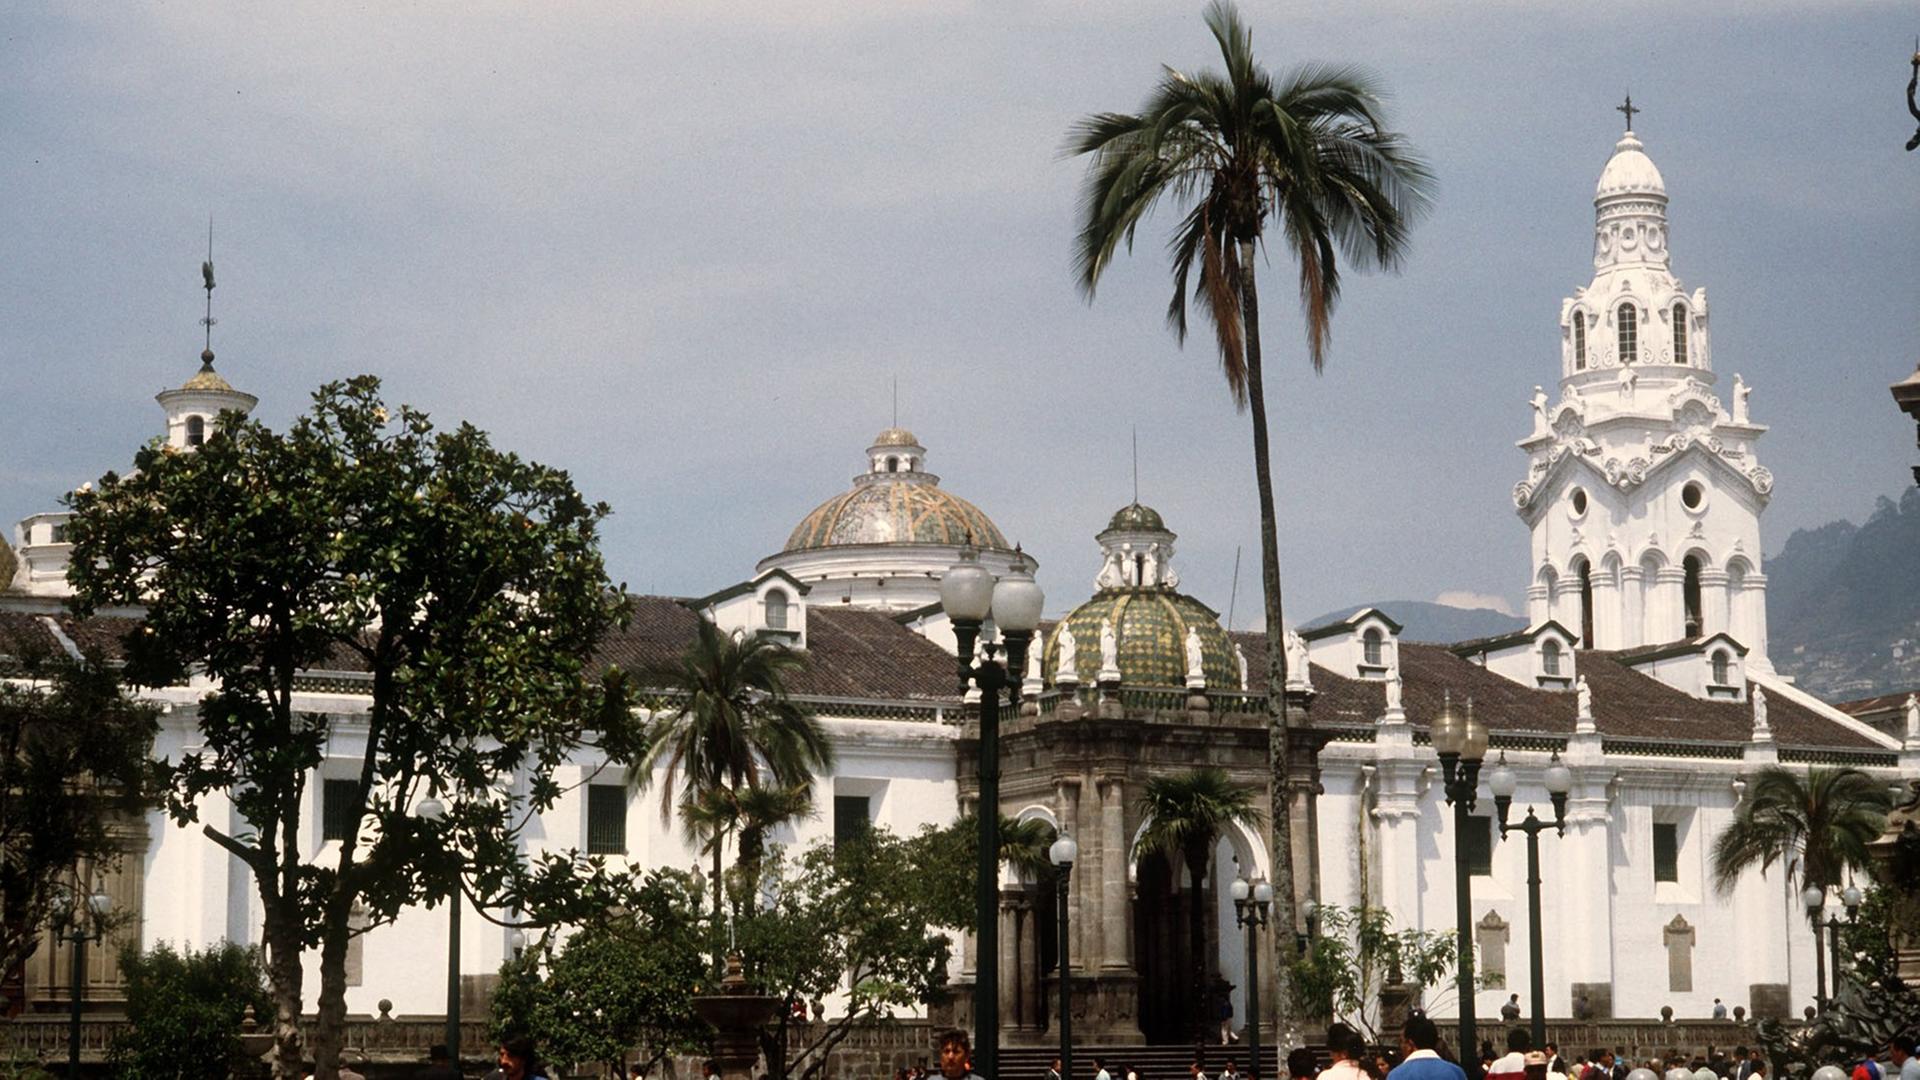 Passanten auf der Plaza de Independencia mit dem weißen Bau der Kathedrale im Stadtzentrum von Quito, der Hauptstadt von Ecuador. Foto vom 19.10.2004